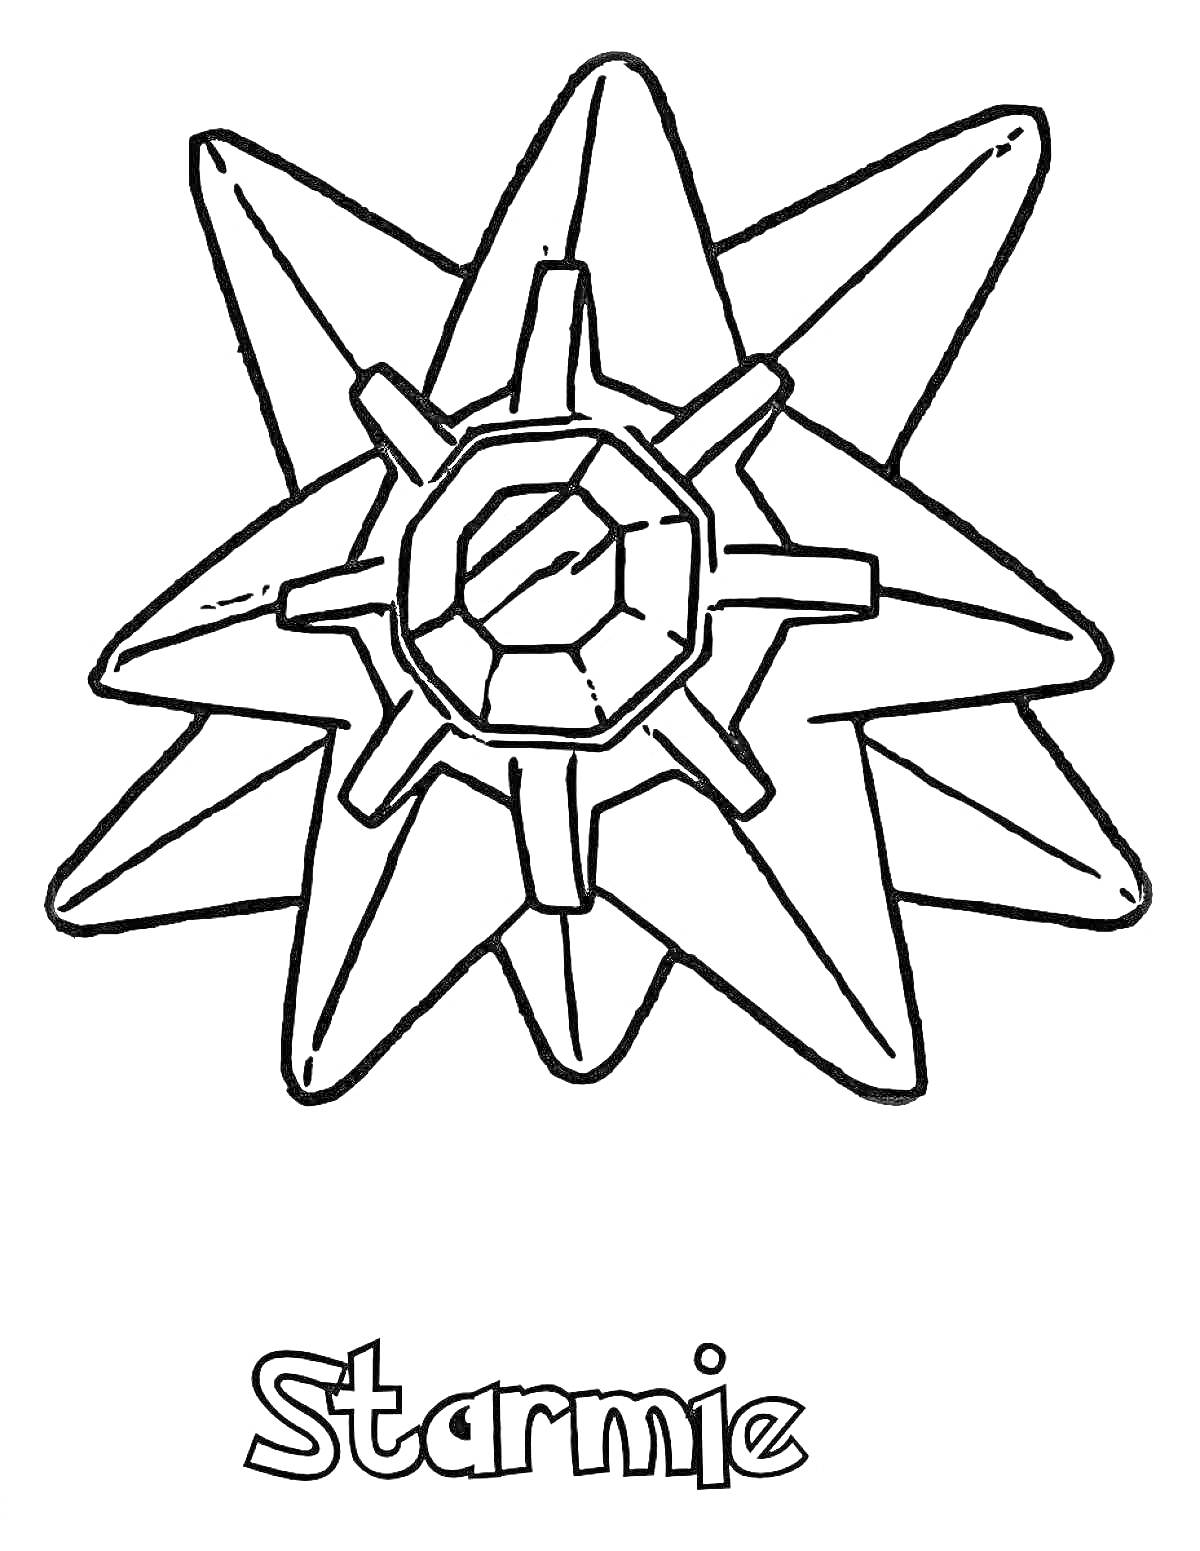 Раскраска Starmie, изображение покемона Starmie с именем покемона внизу